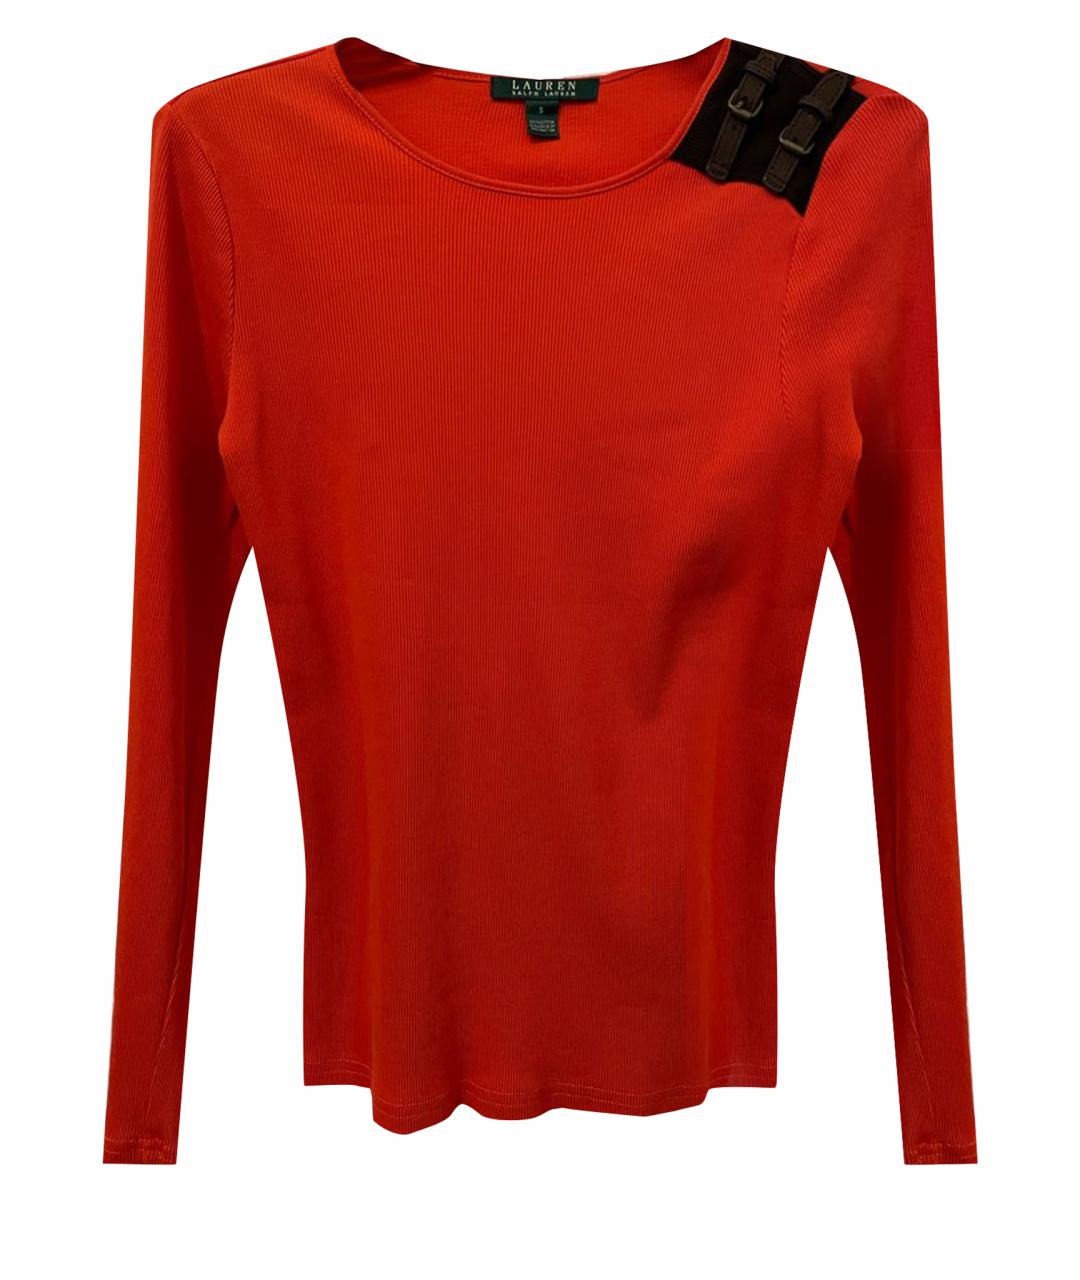 RALPH LAUREN Оранжевый хлопковый джемпер / свитер, фото 1